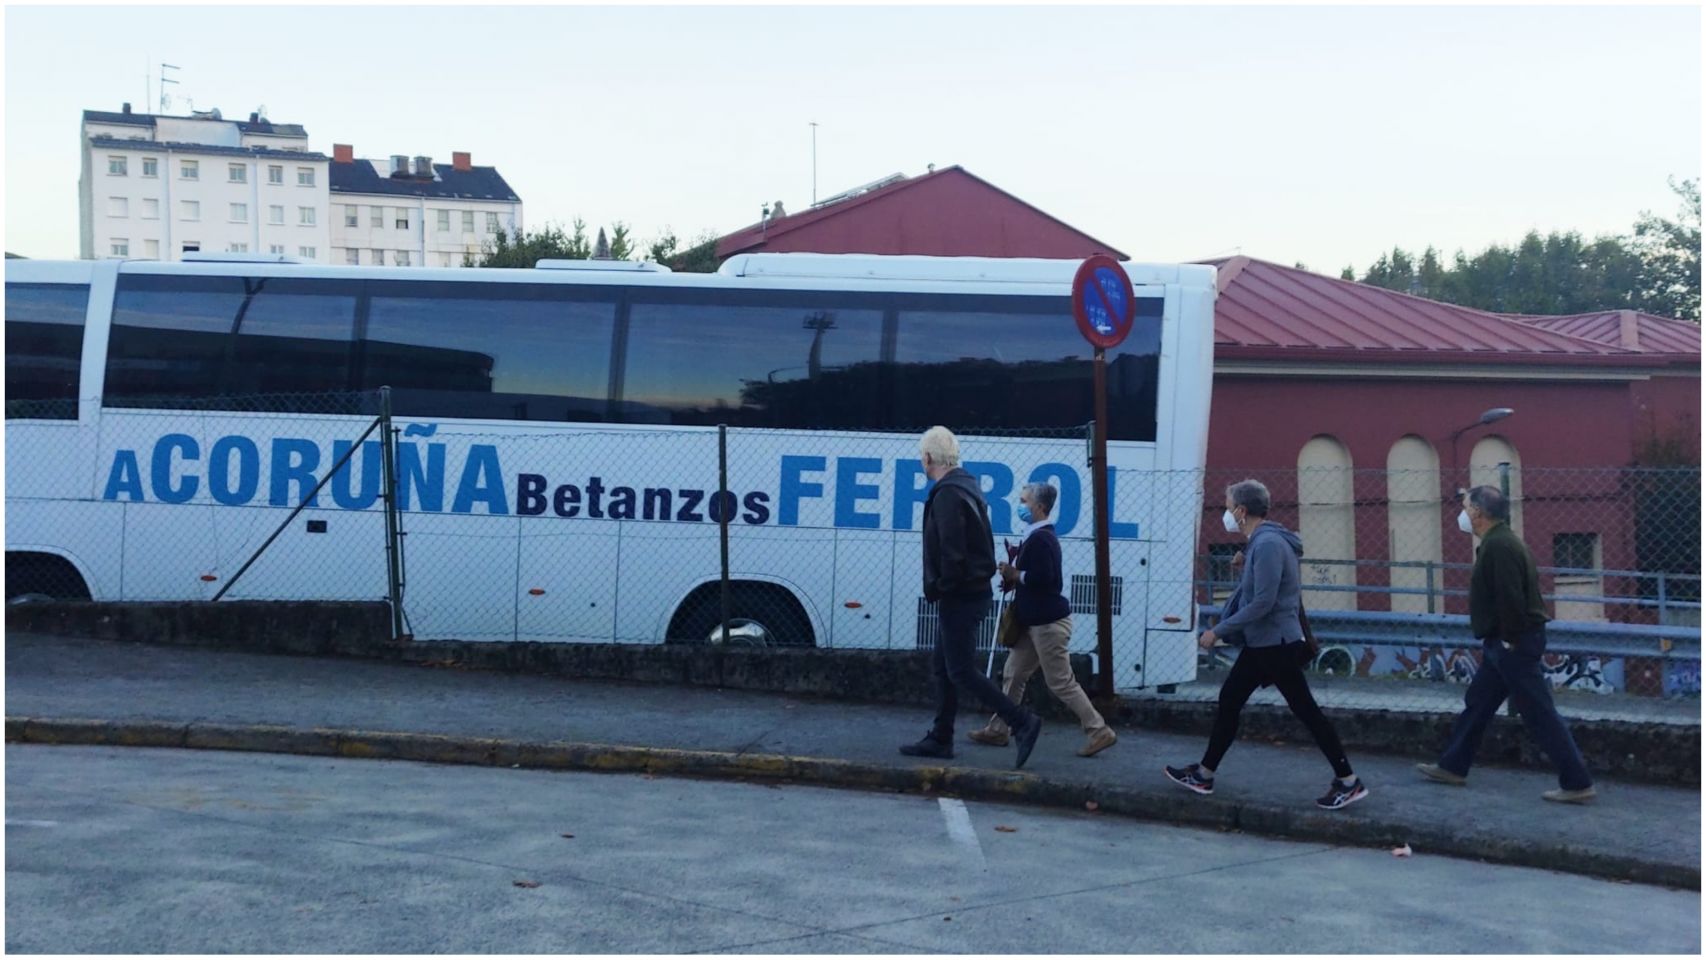 Autobús entrando en la estación de Ferrol.